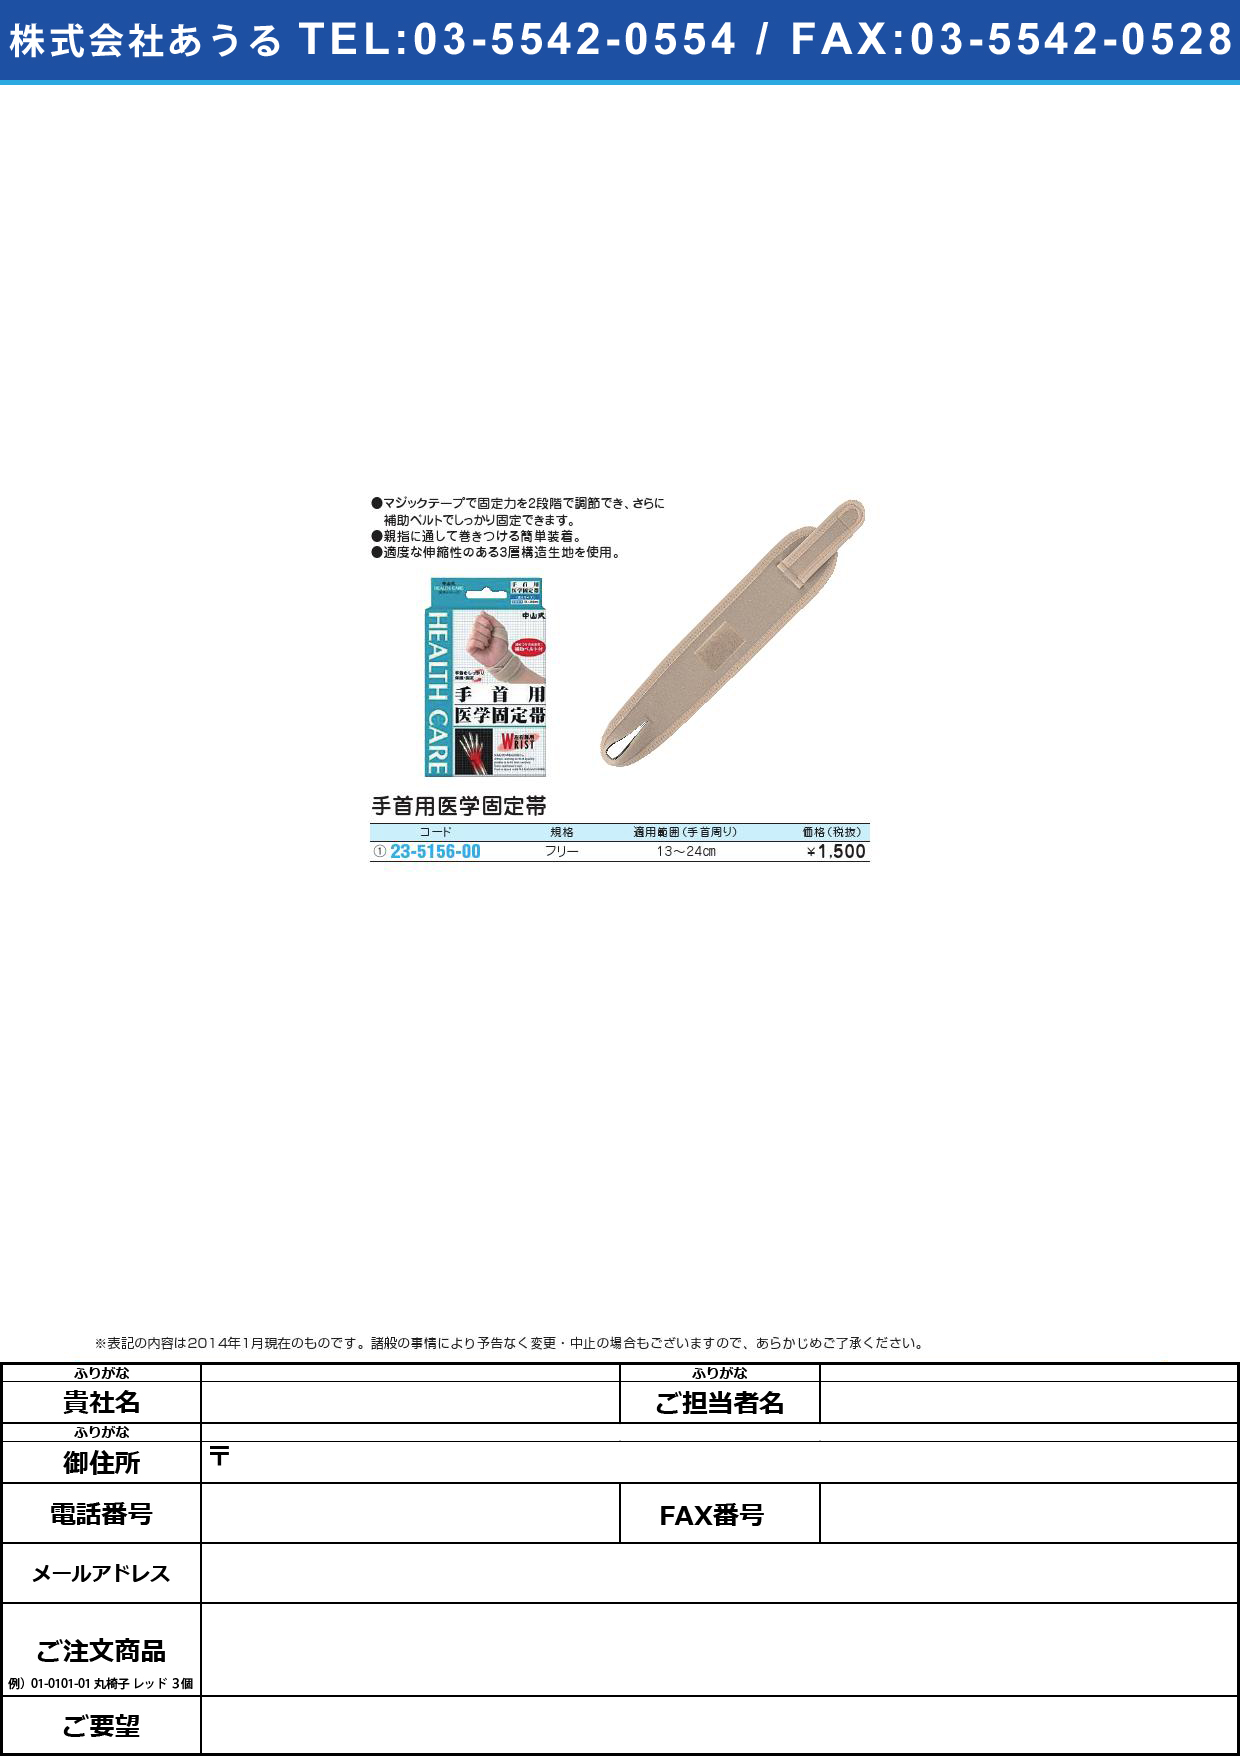 中山式手首用医学固定帯 ﾃｸﾋﾞﾖｳｲｶﾞｸｺﾃｲﾀｲ ﾌﾘｰ【1個単位】(23-5156-00)